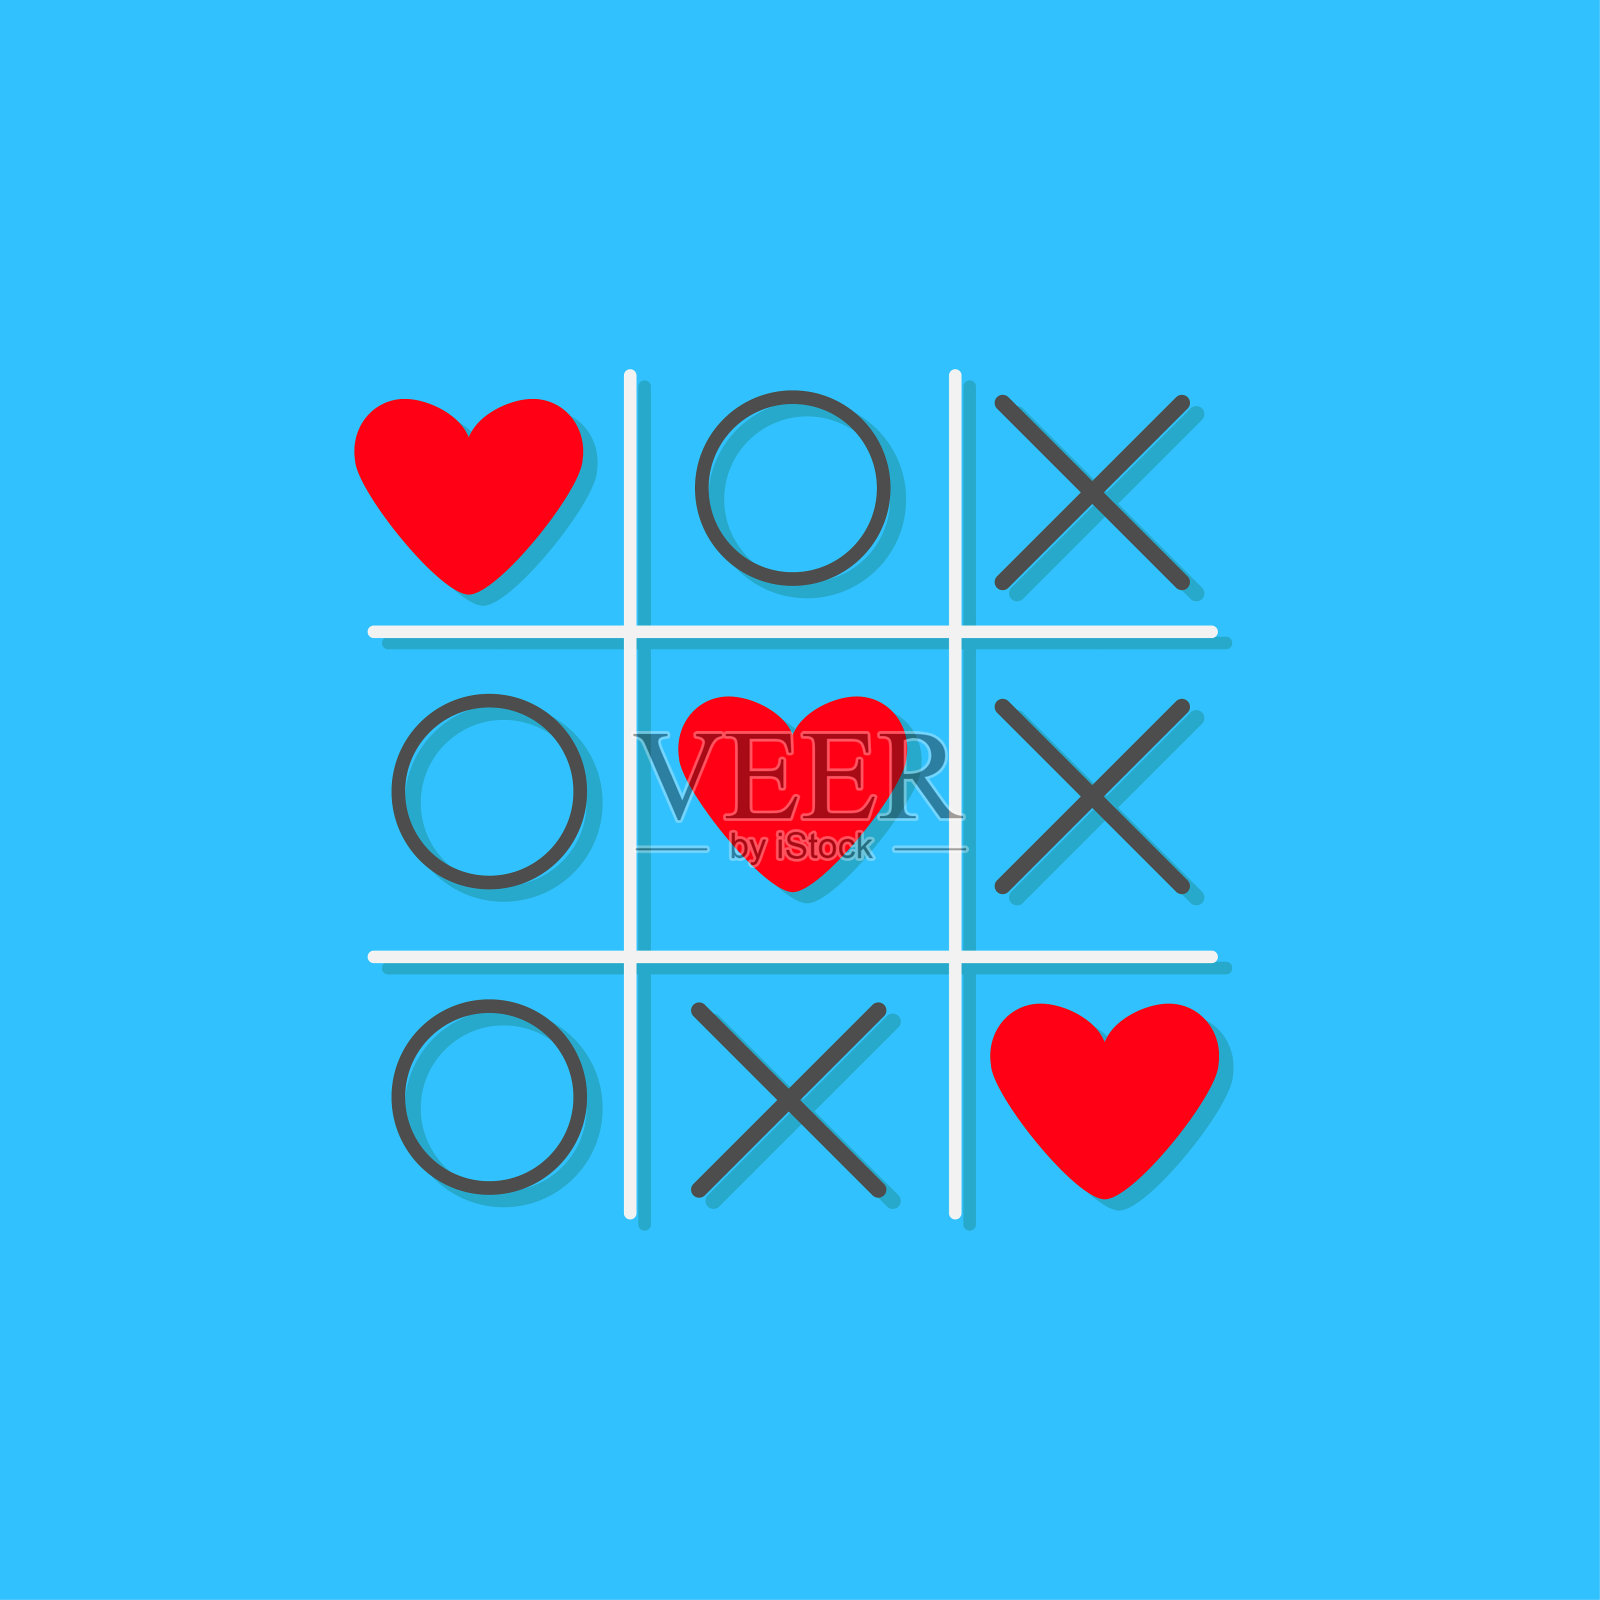 Tic tac toe游戏与十字和三个红心标志标志爱卡平面设计蓝色背景插画图片素材